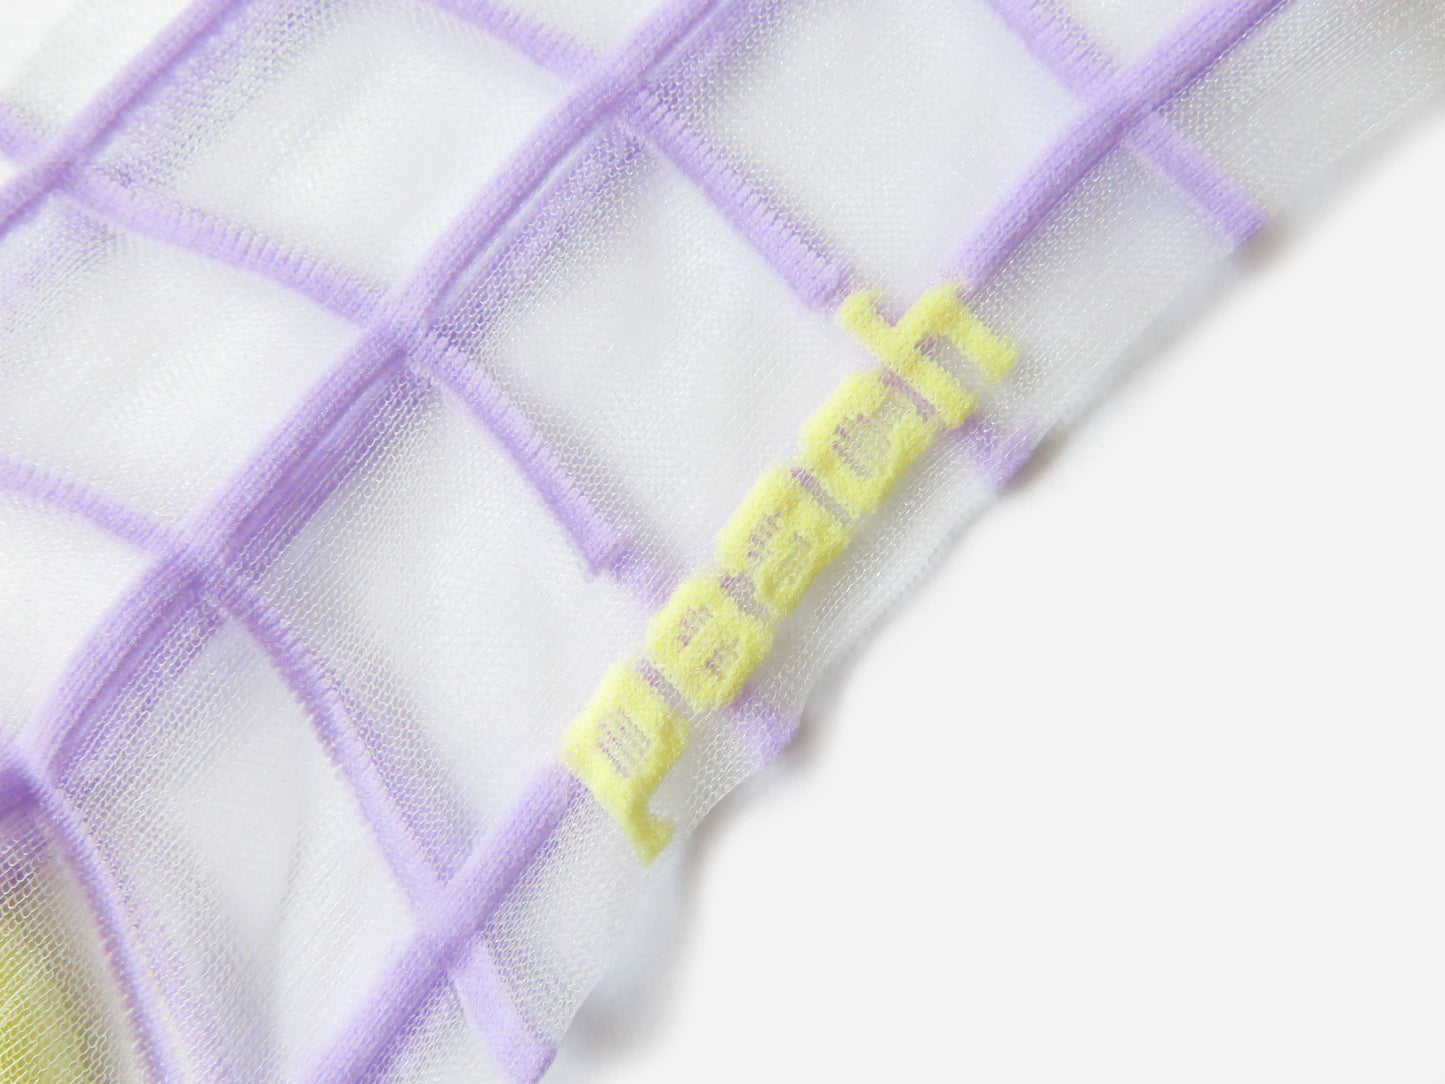 Pastel Grid Socks